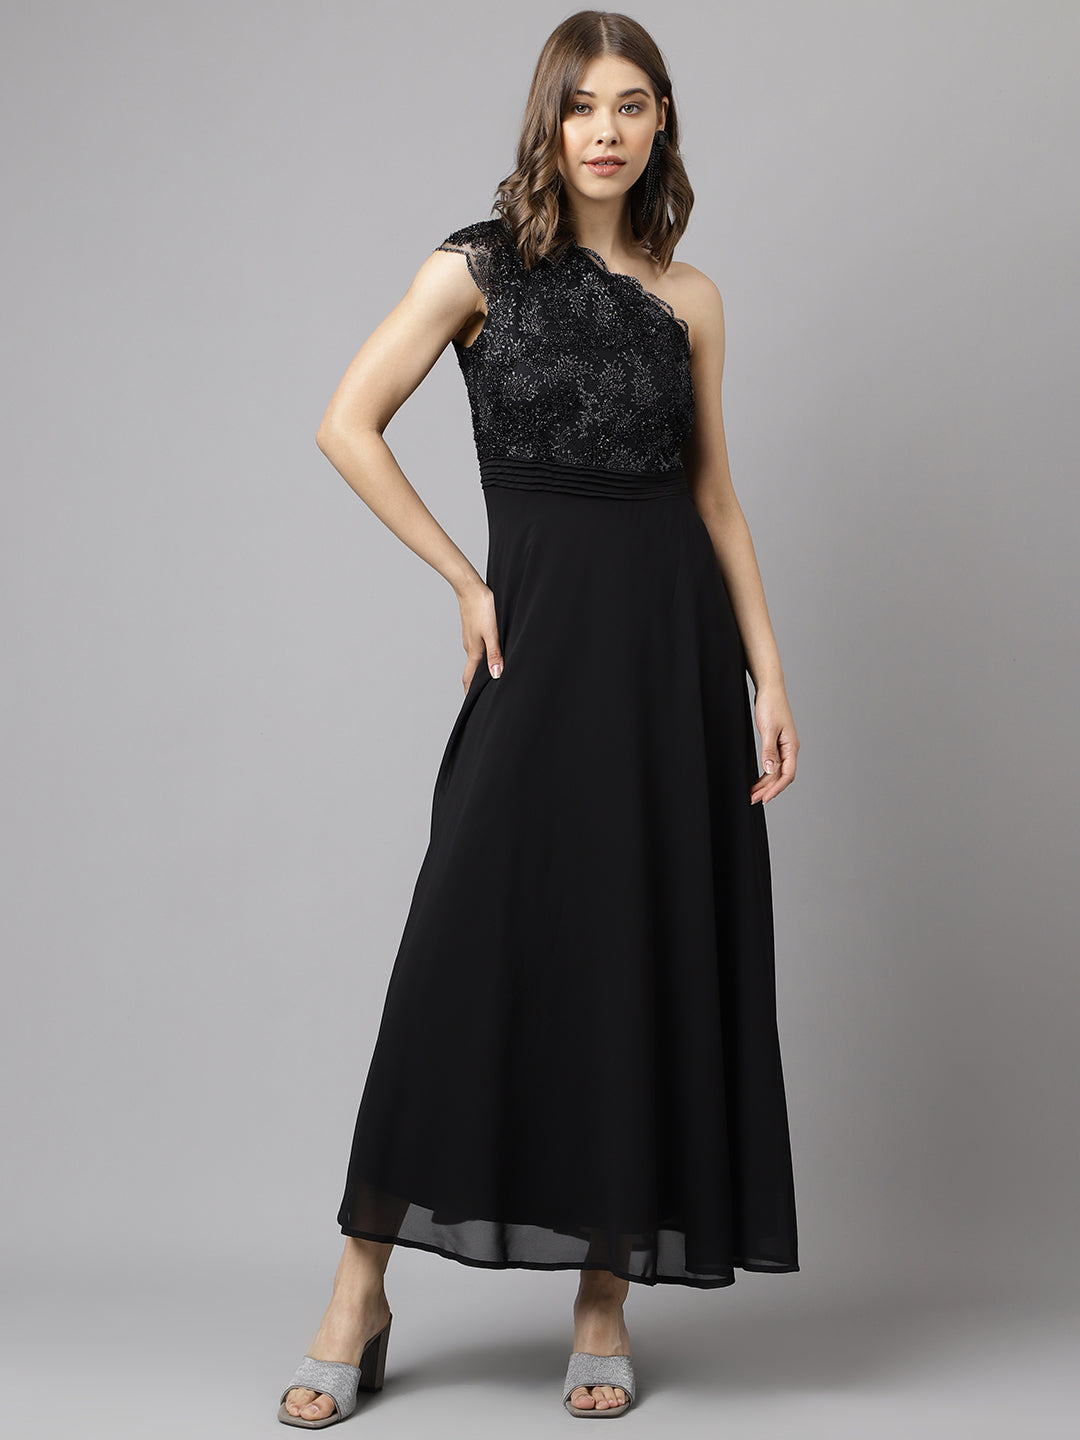 Black Cap-Sleeve Solid Sequin Dress